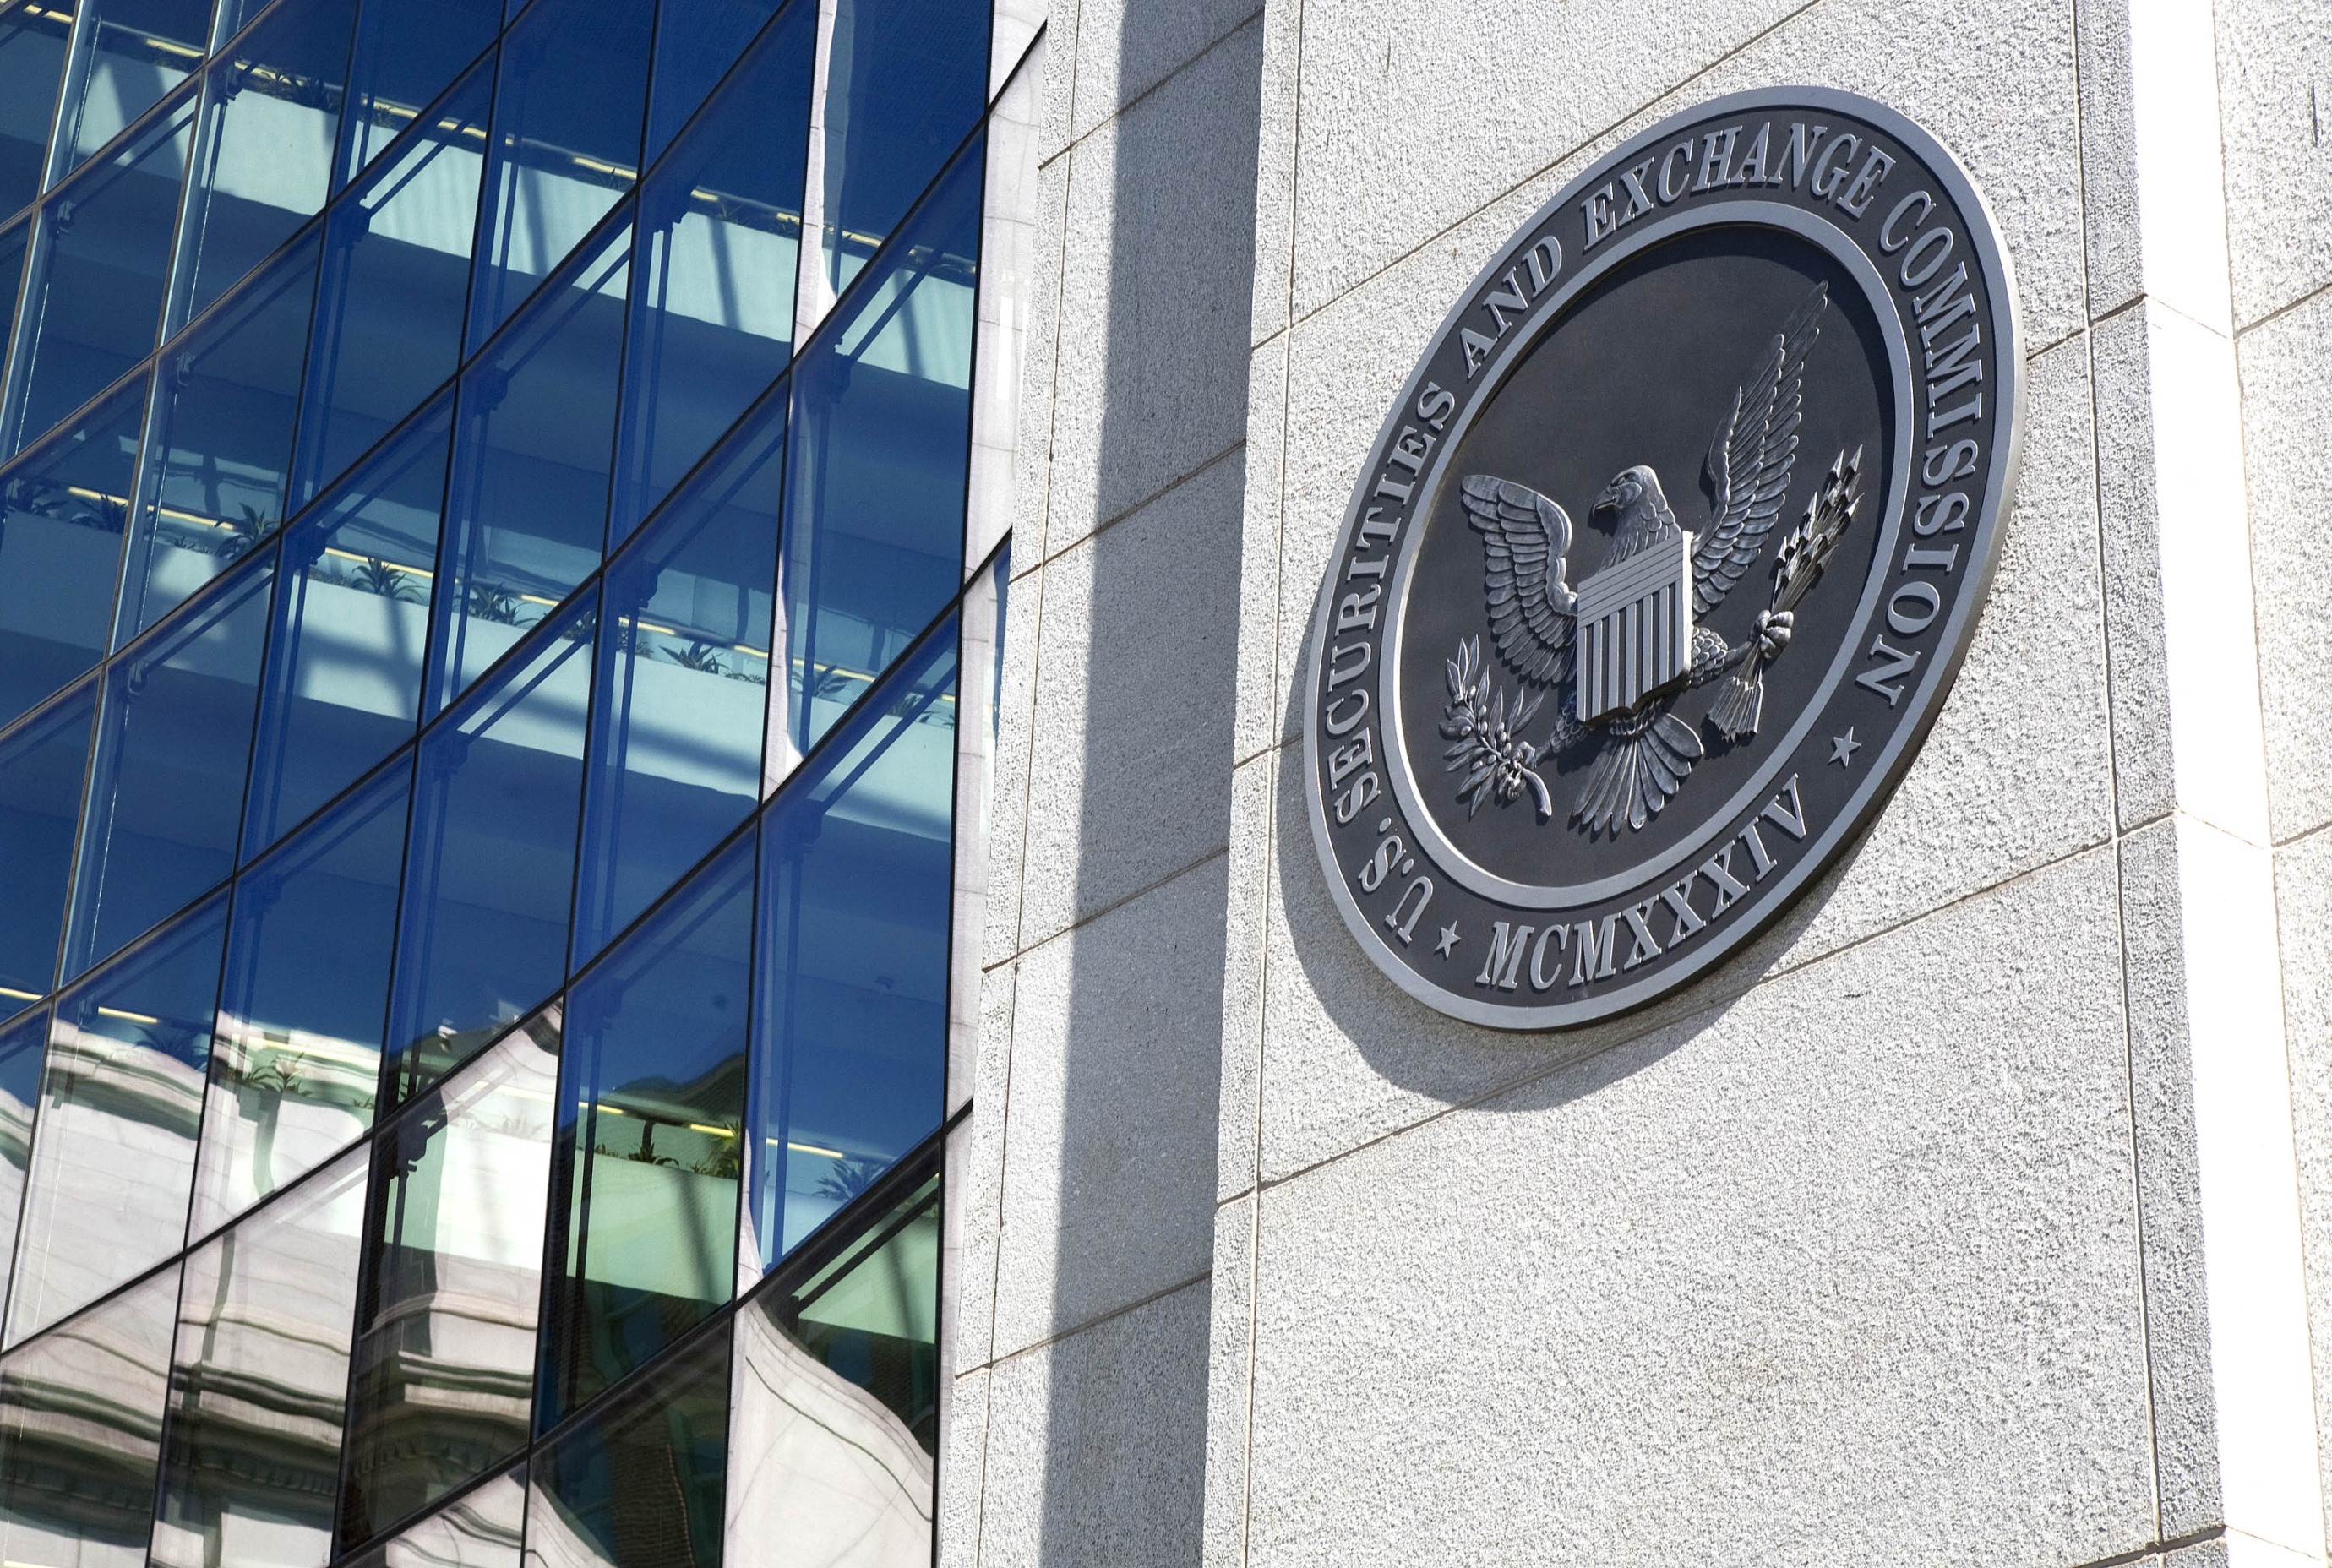 SEC Grants Two Whistleblower Awards Totaling $2.1 Million